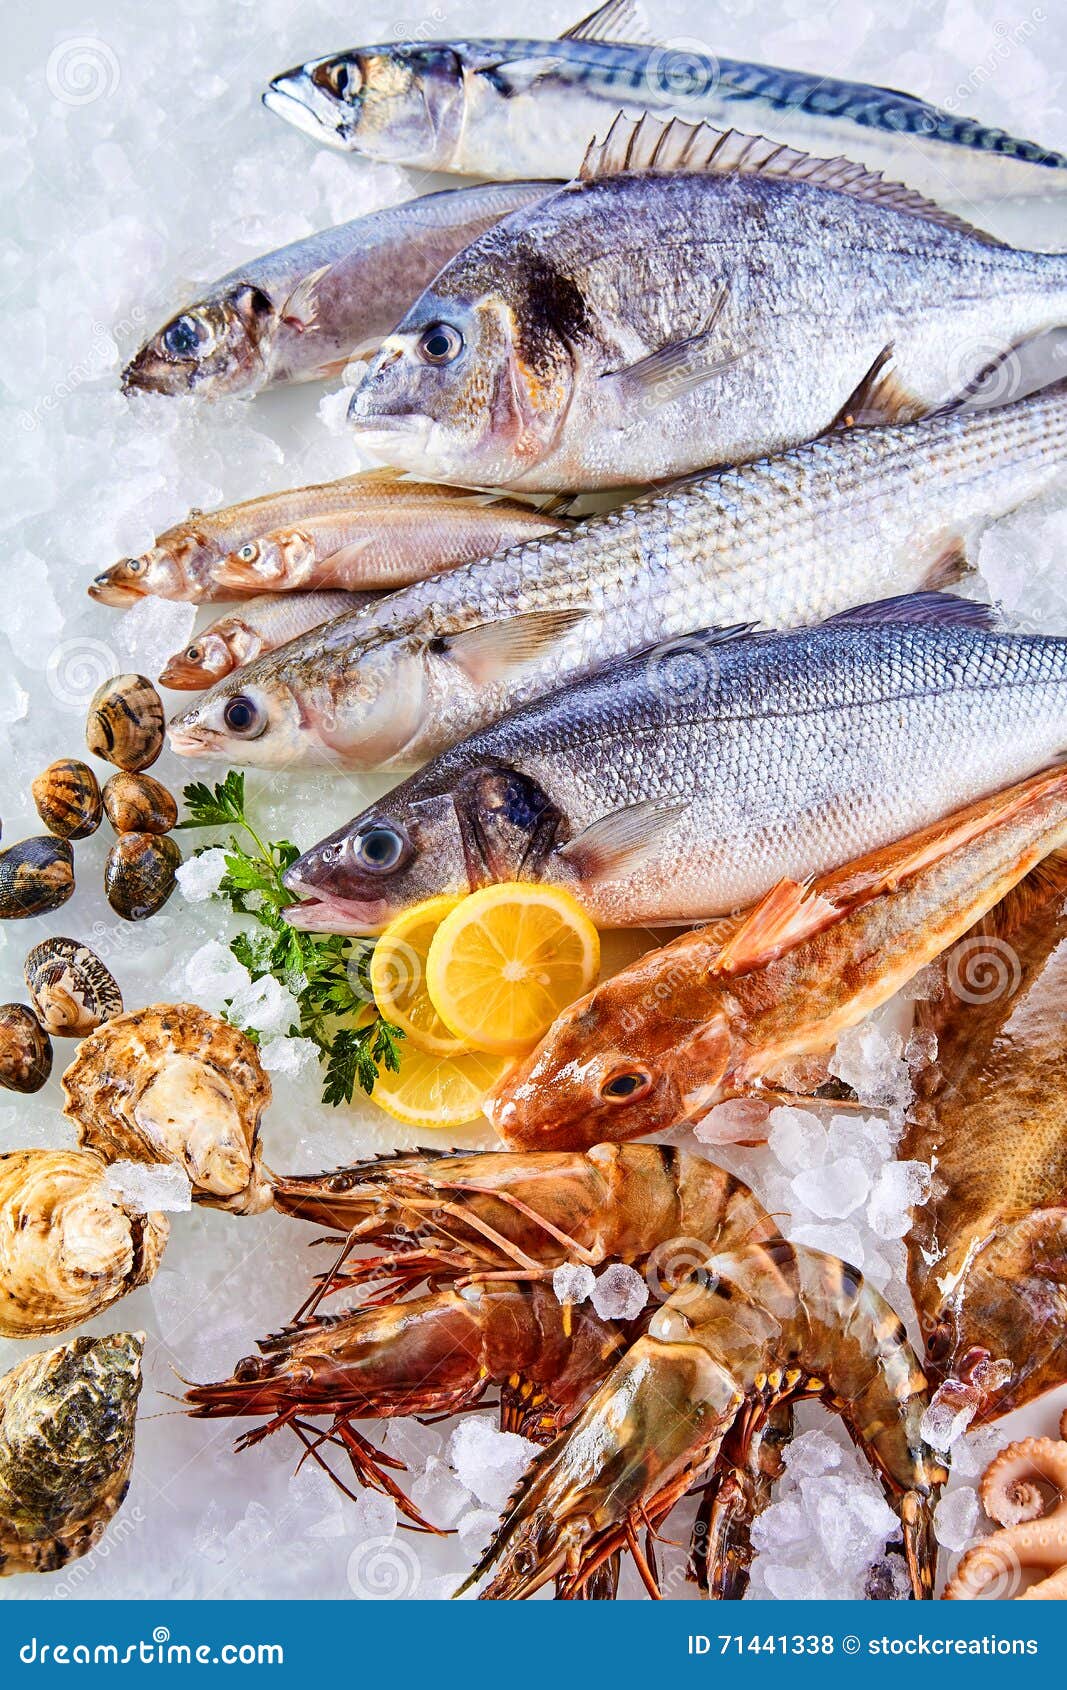 cold seafood display